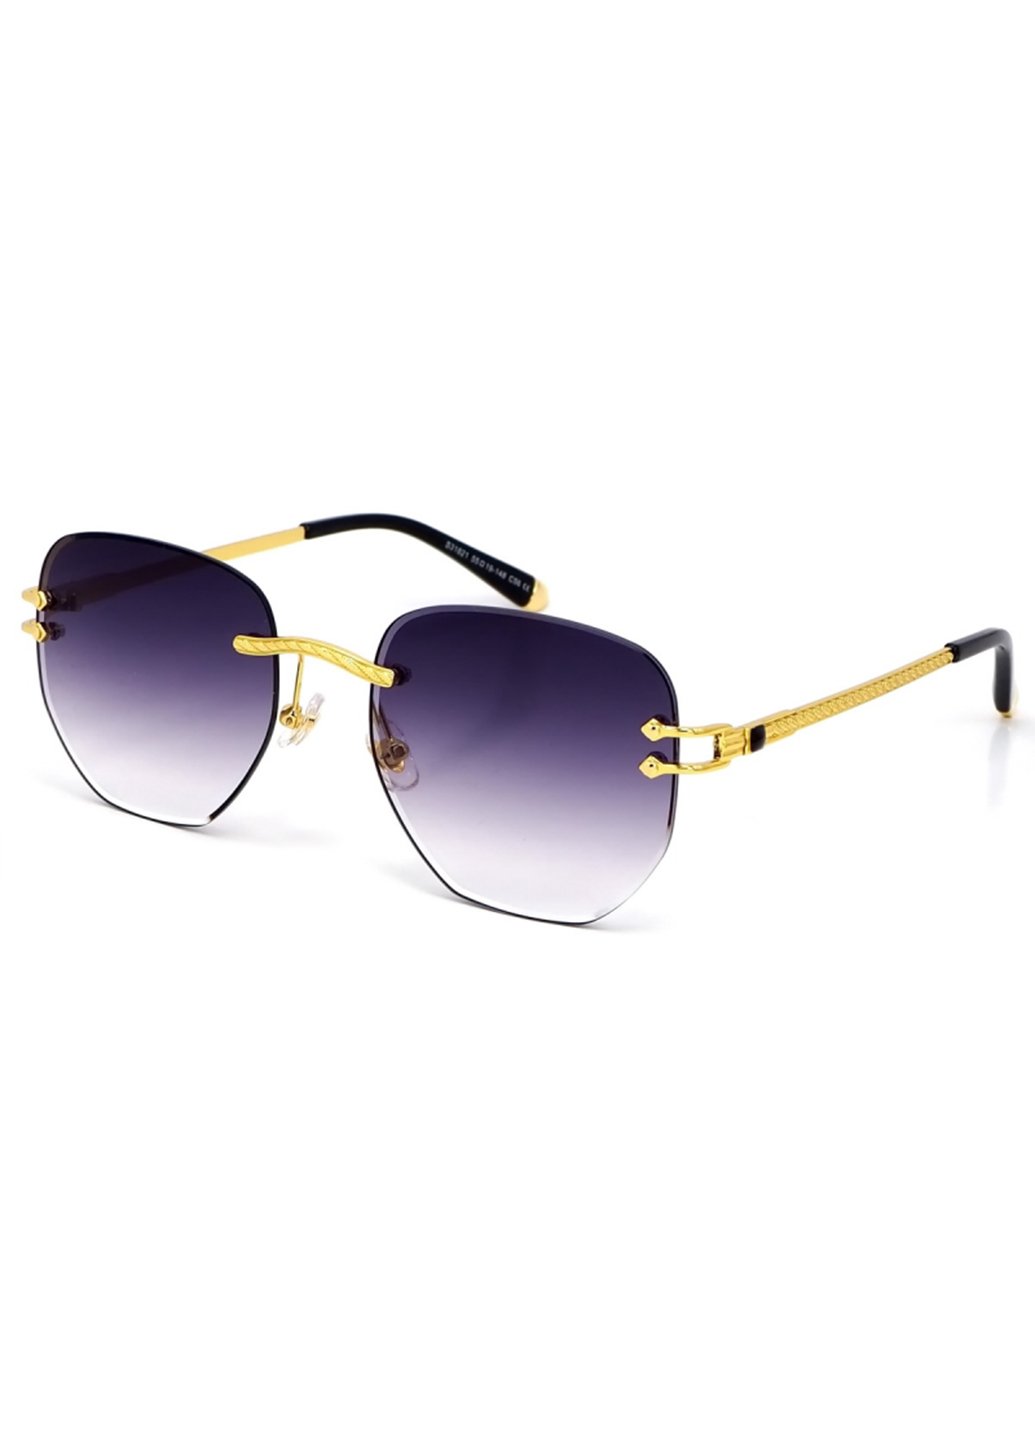 Купить Женские солнцезащитные очки Merlini с поляризацией S31821 117061 - Золотистый в интернет-магазине